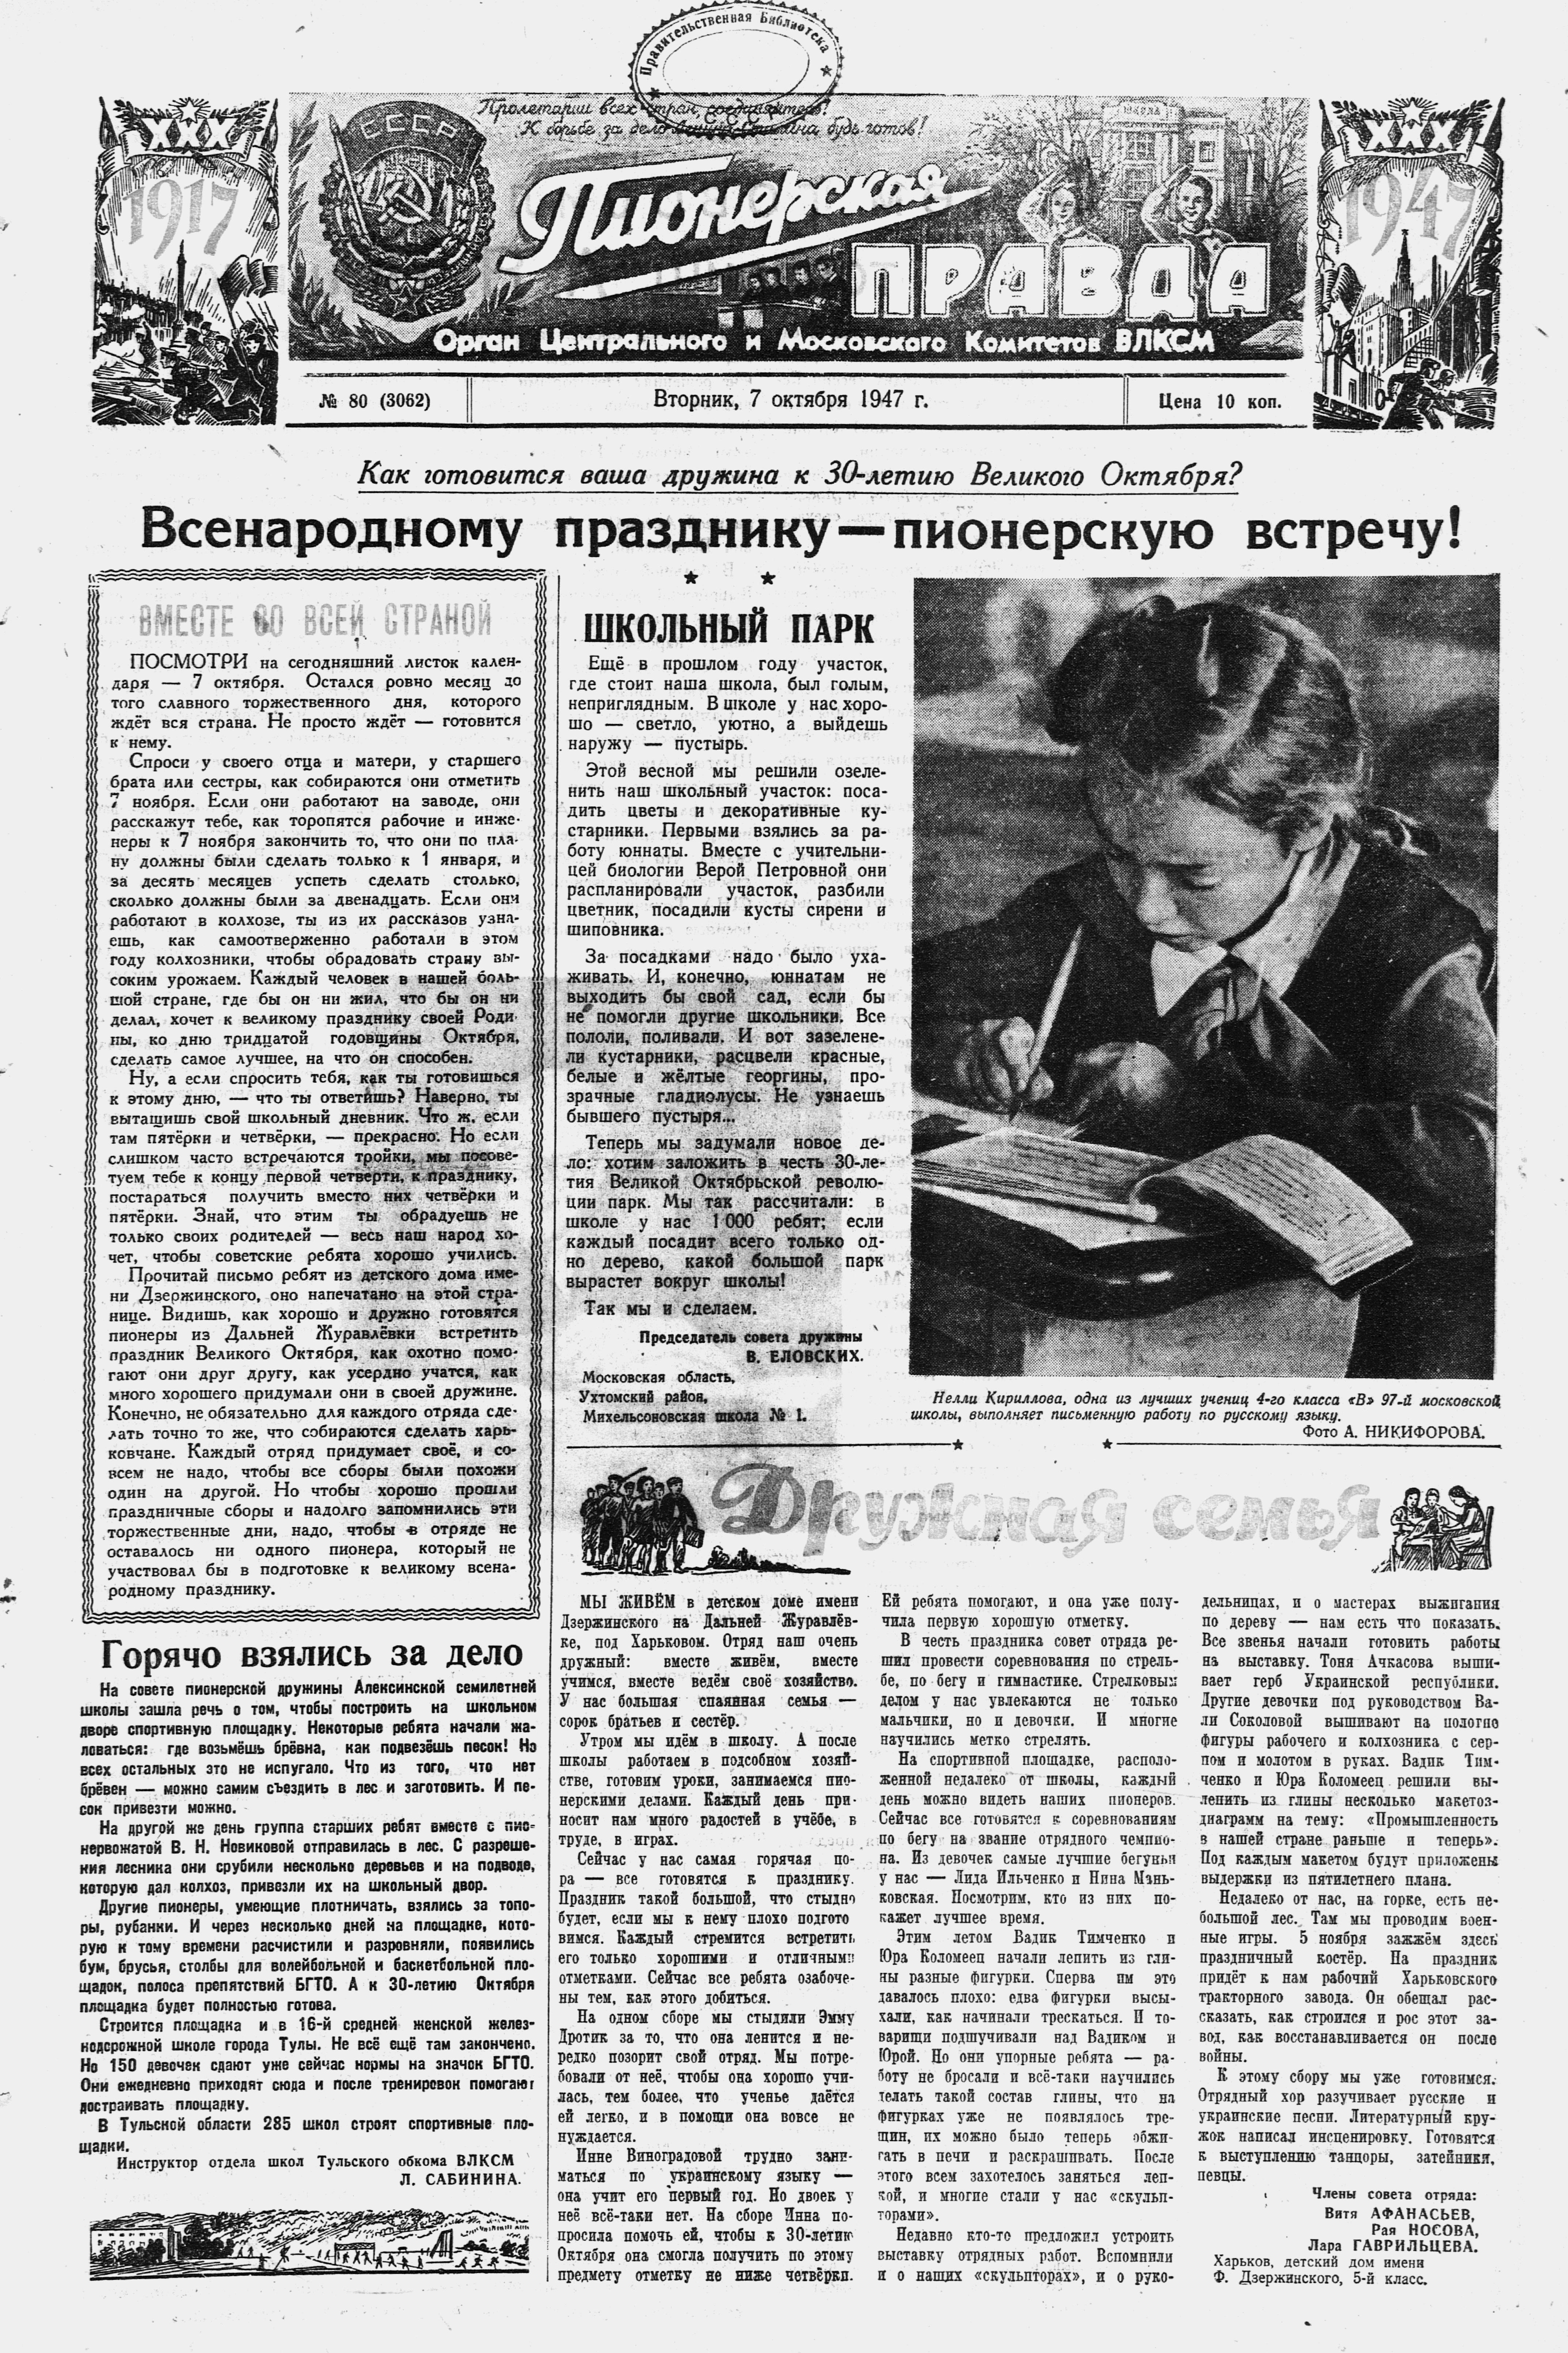 Пионерская правда. 1947. № 080 (3062): Орган Центрального и Московского комитетов ВЛКСМ - 1947